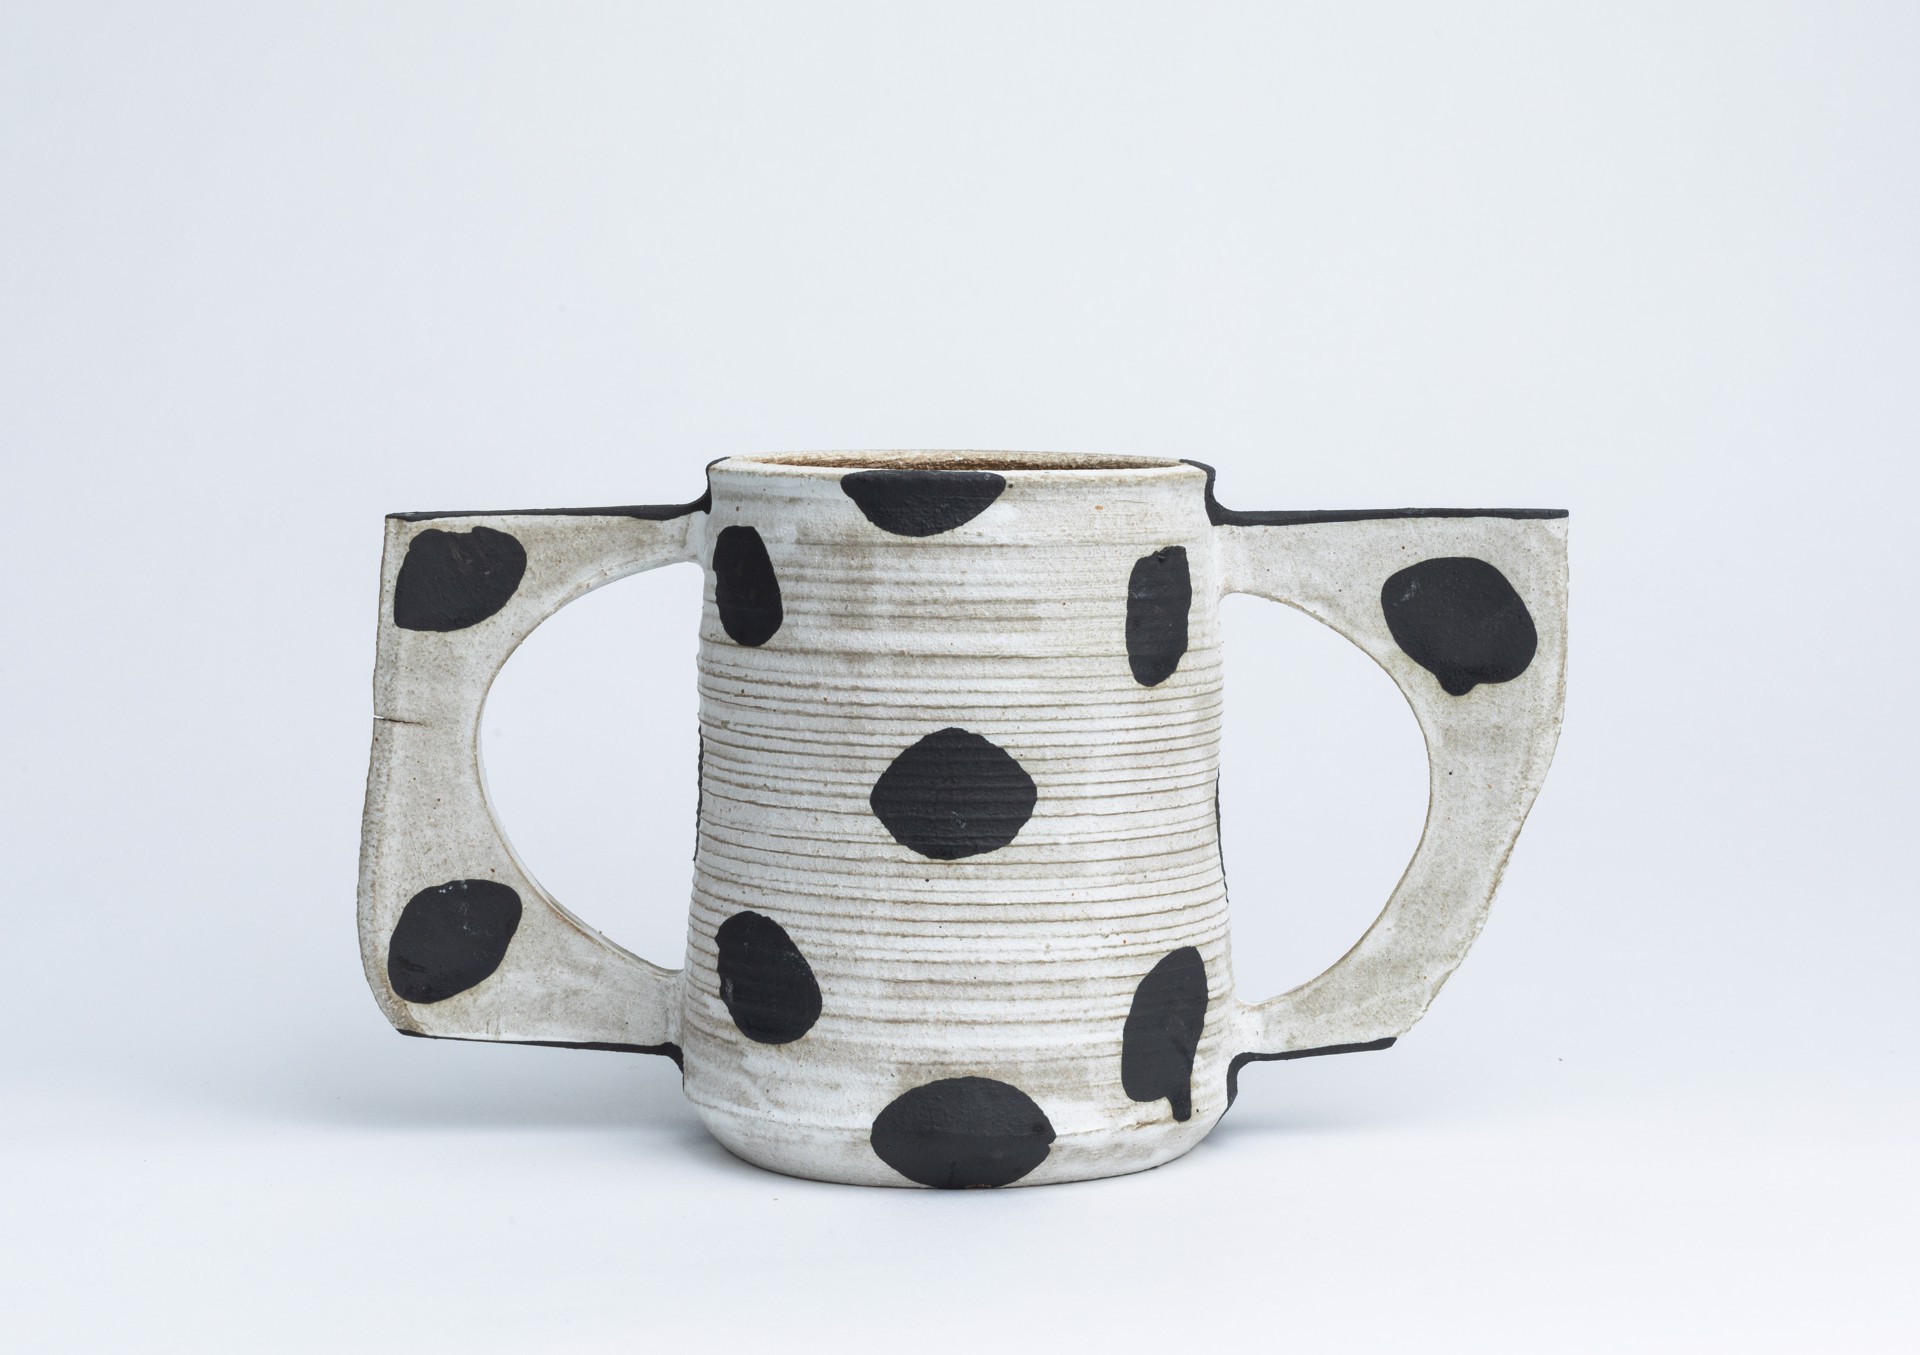 Dalmatian Vase I by Glory Day Loflin Ceramics